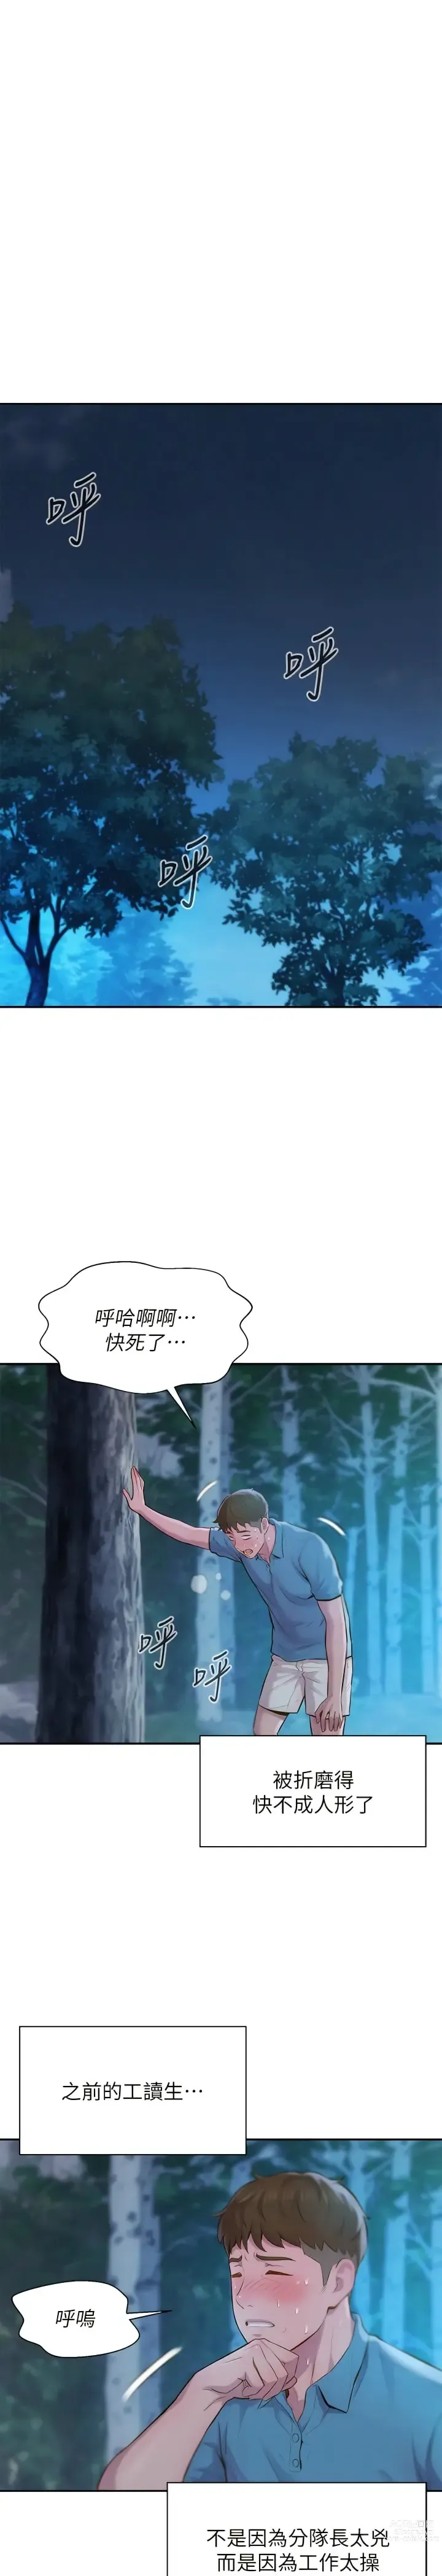 Page 33 of manga 浪漫露营／Romance Camping